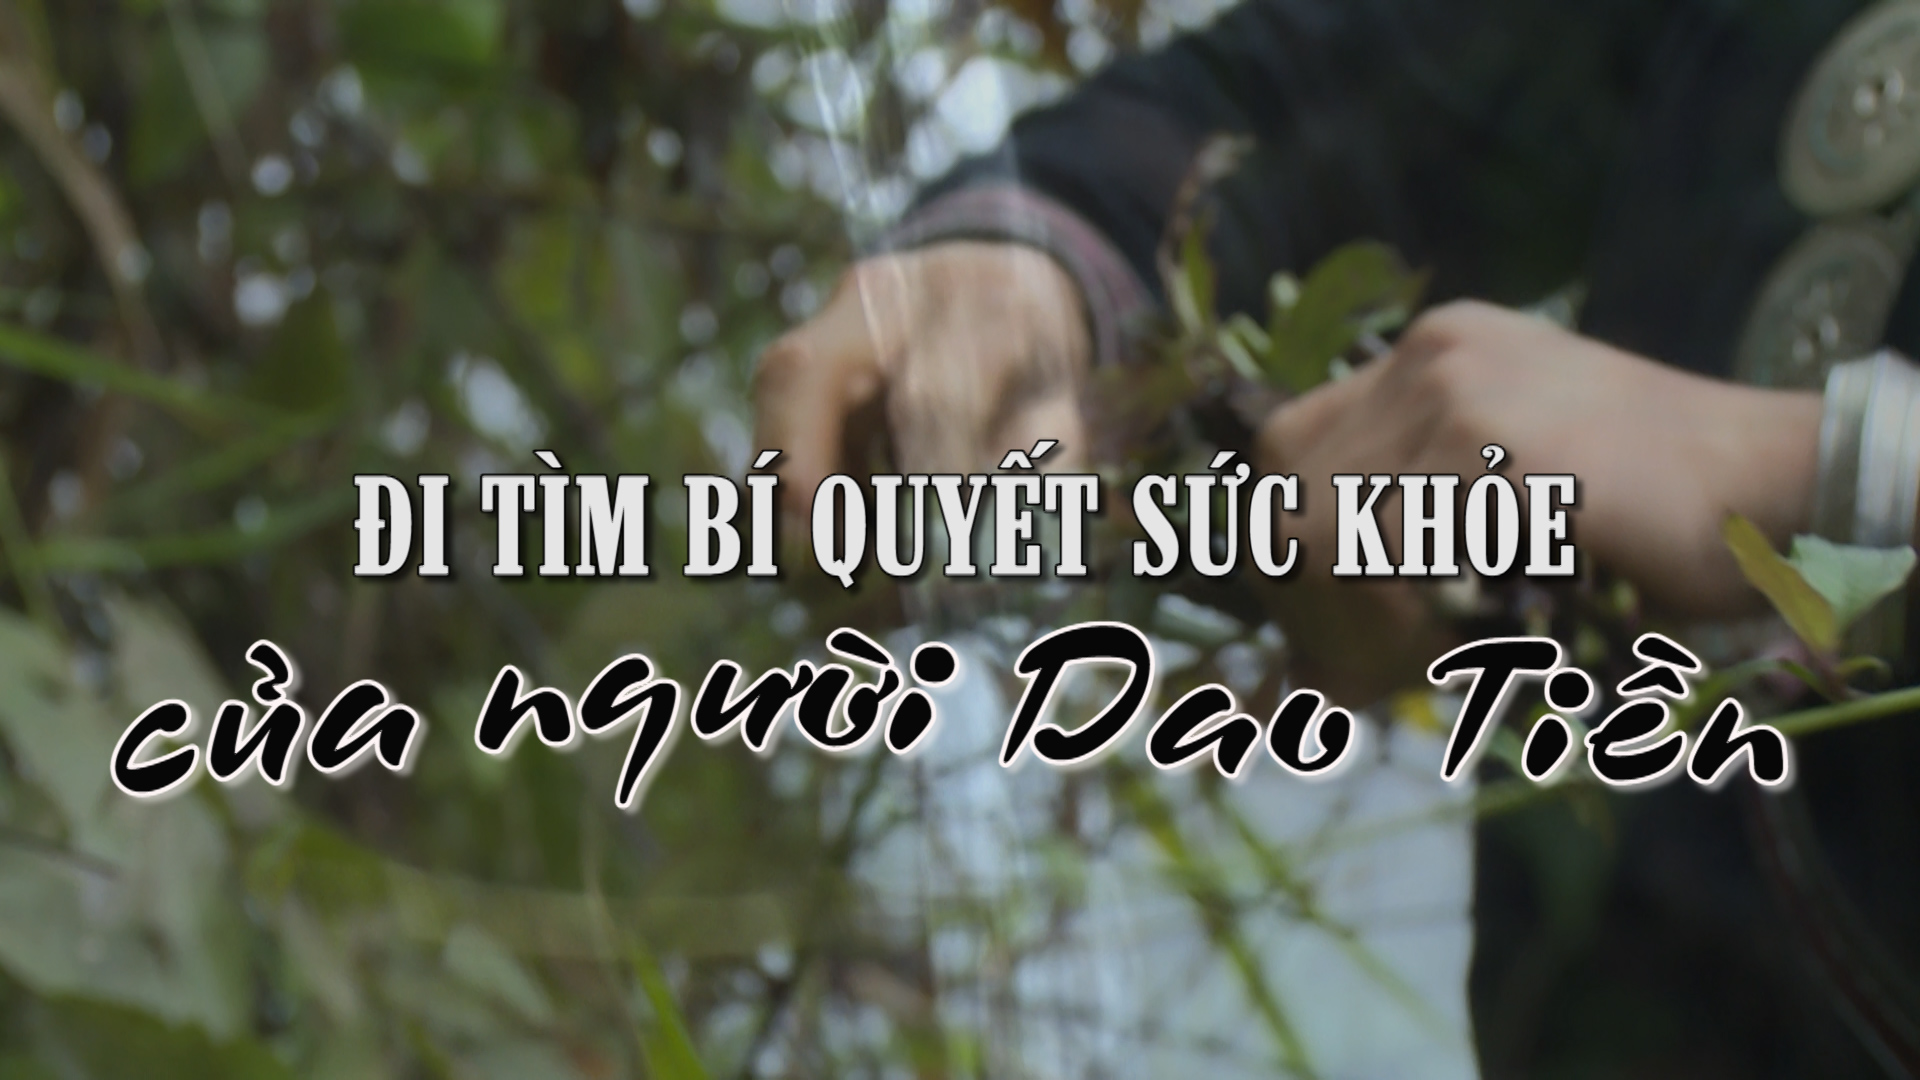 Cùng tìm hiểu câu chuyện về người Dao Tiền - một trong những dân tộc đặc biệt nhất của Việt Nam. Từ hình ảnh đời thường đến các tập tục truyền thống lâu đời, bạn sẽ được thấy sự bền vững của văn hoá này qua thời gian.